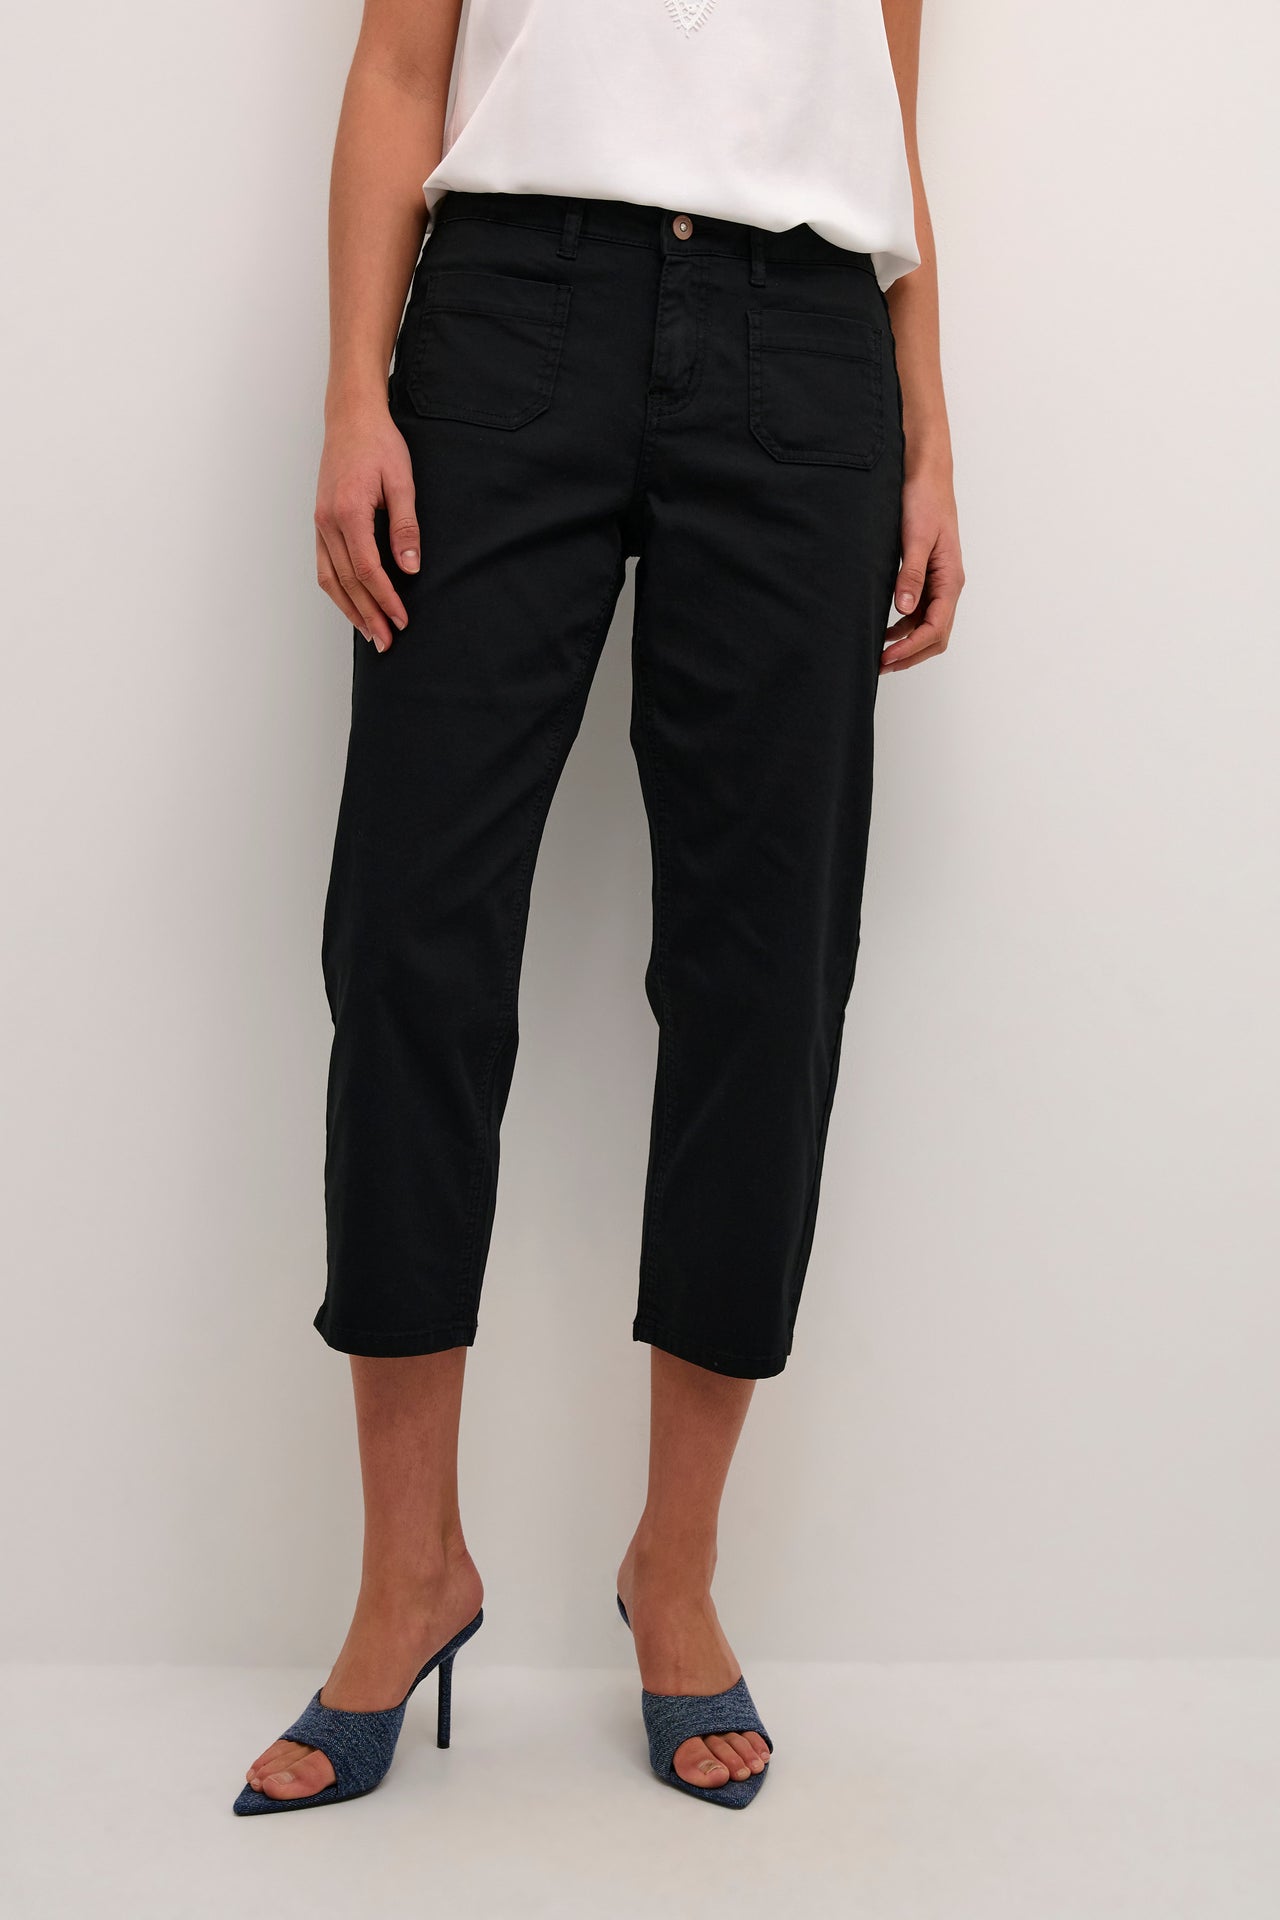 Pantalons / Pants | Boutique Windrush